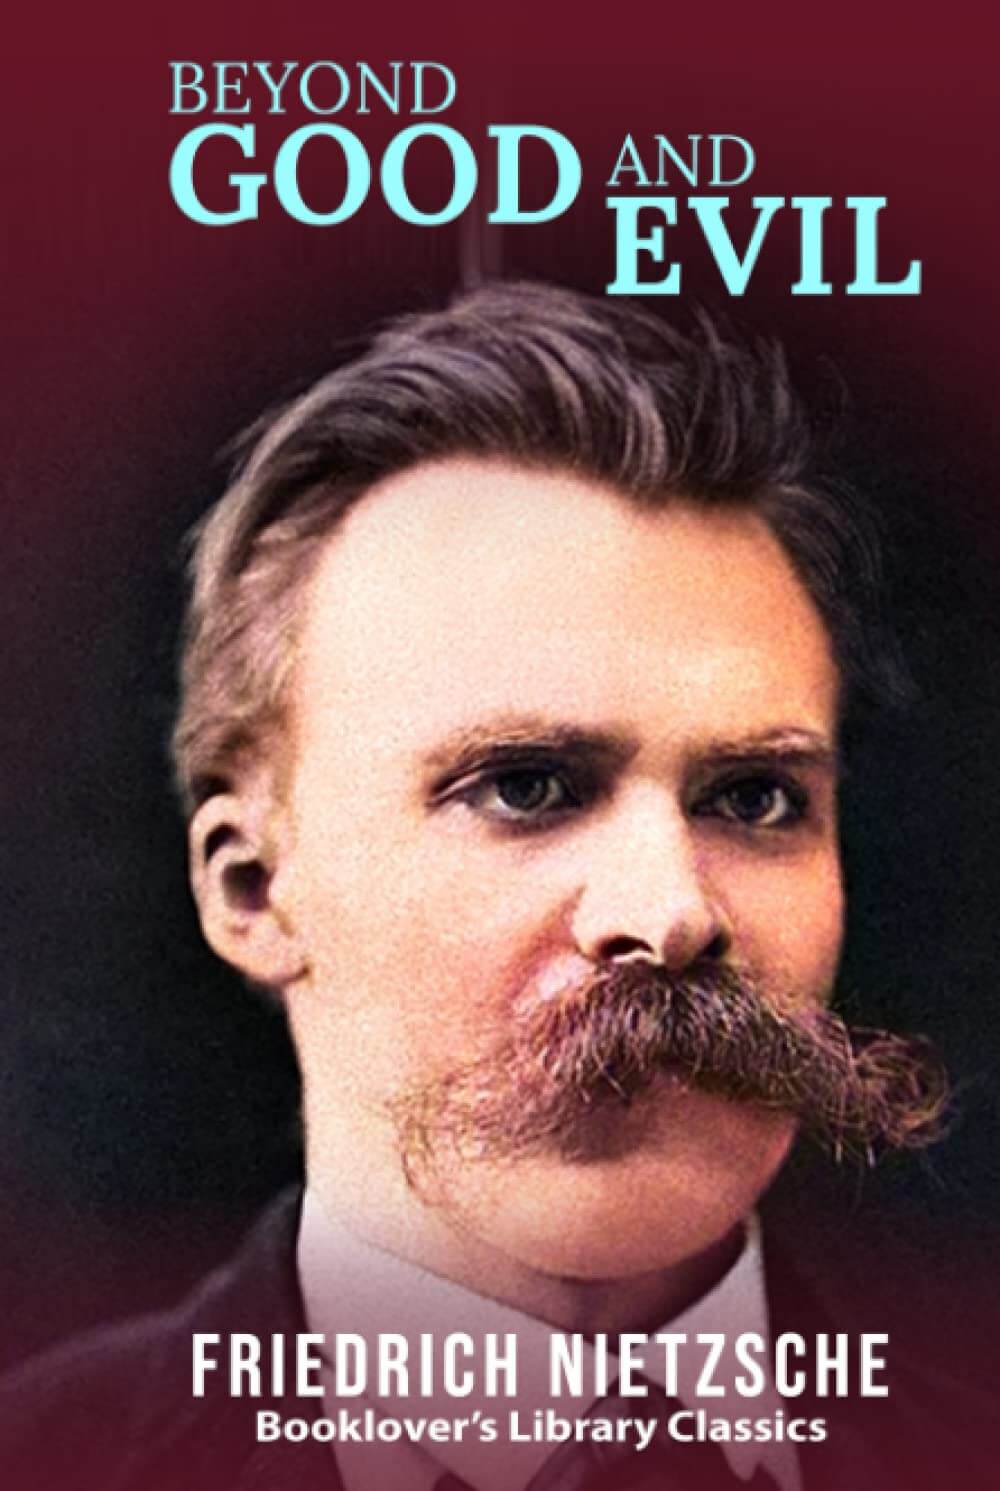 "Beyond Good and Evil" by Friedrich Nietzsche